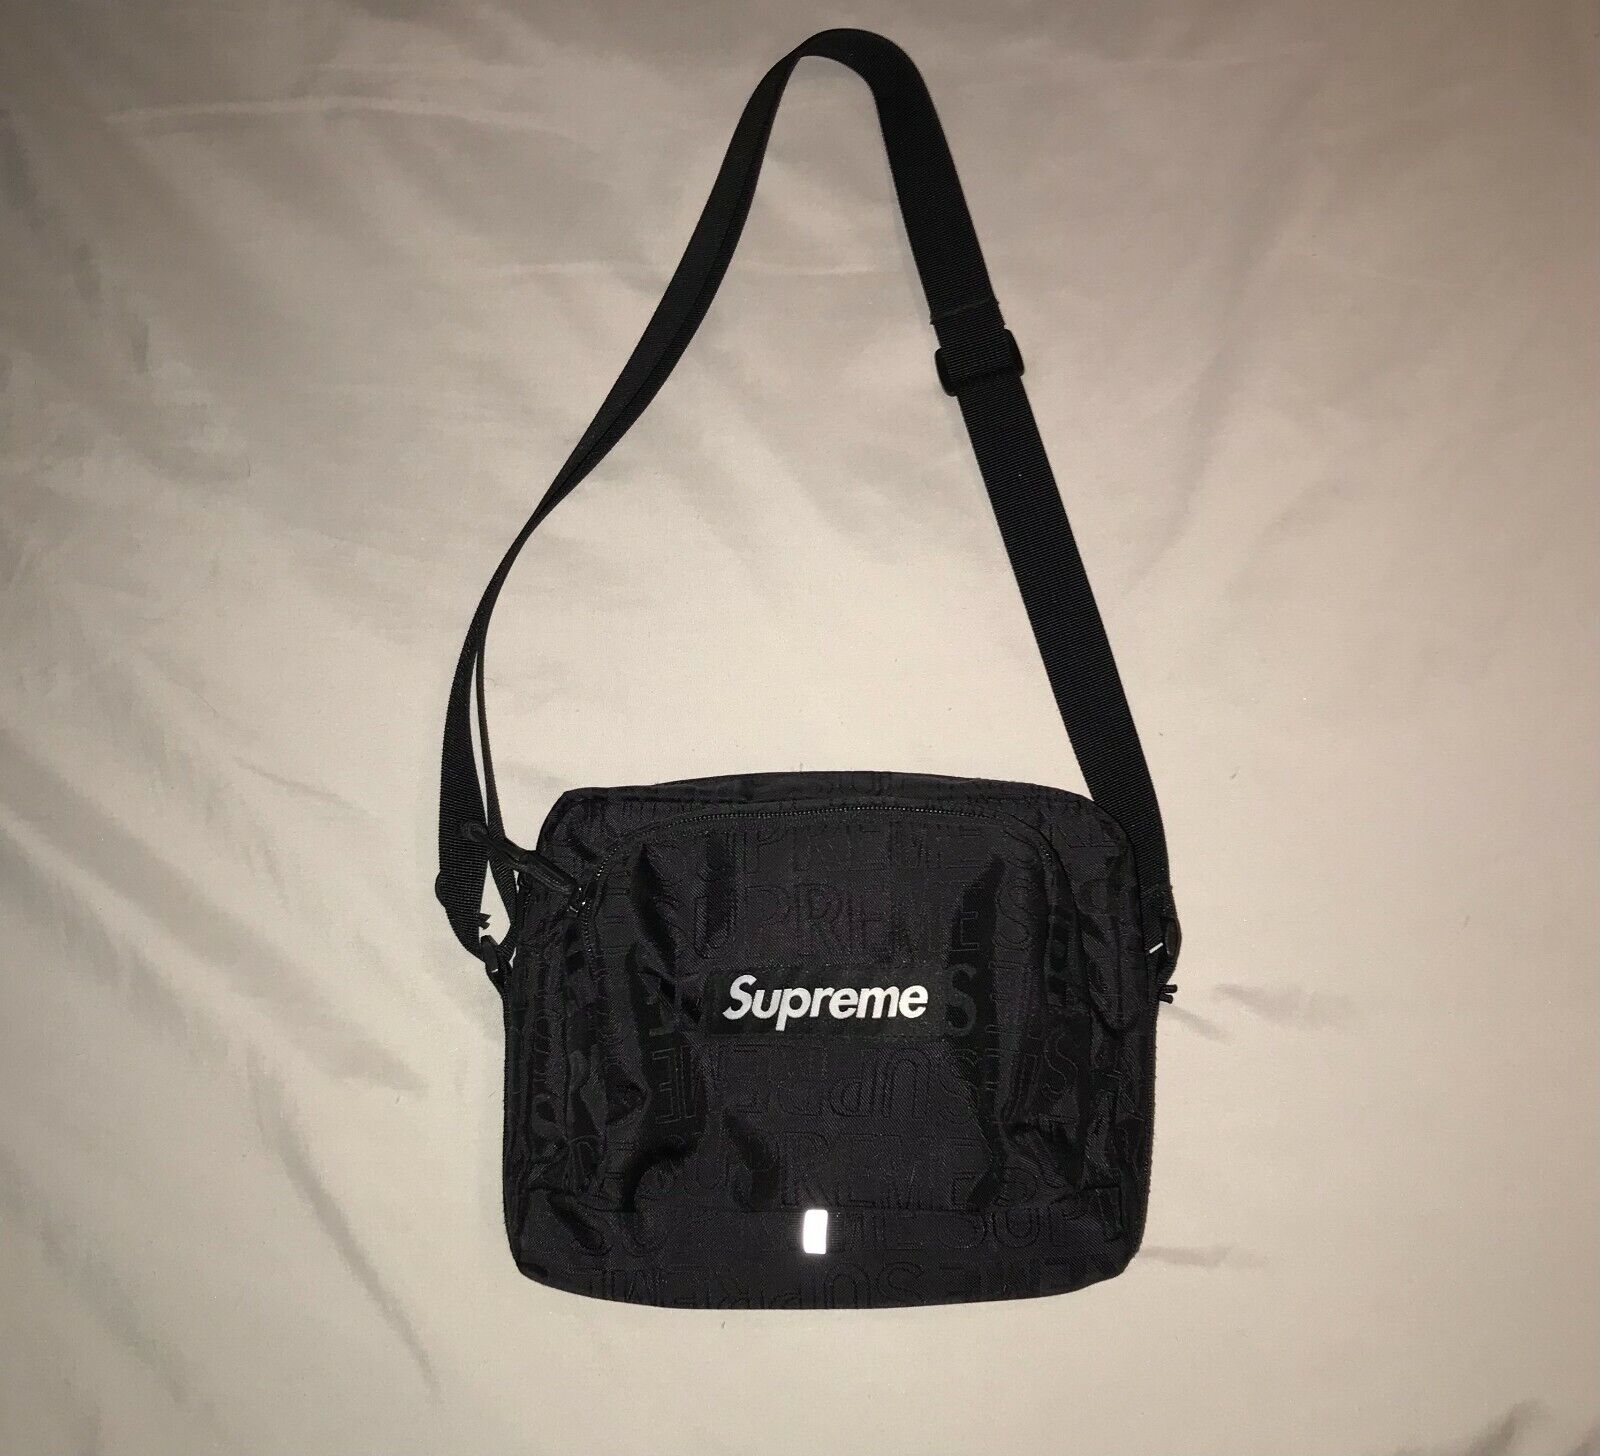 Supreme shoulder bag ss19 black | eBay